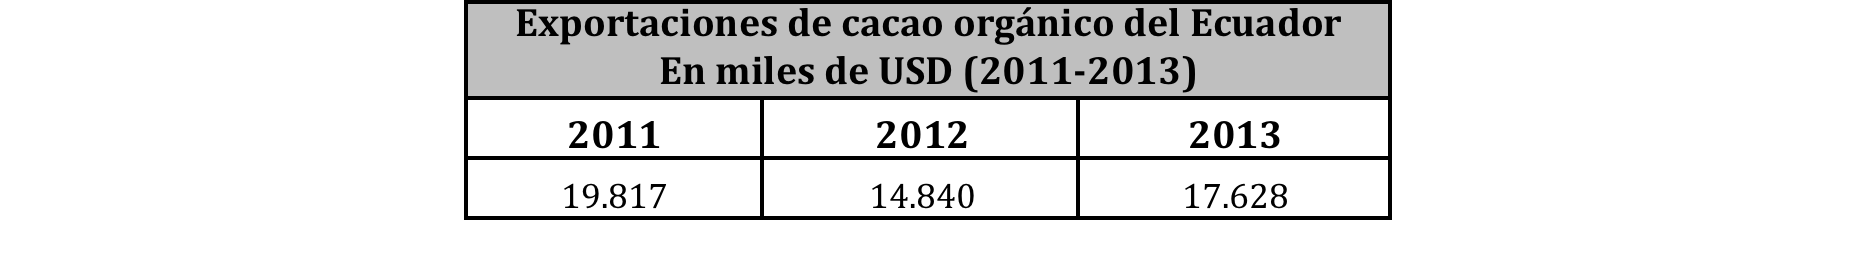 Cacao orgánico El cacao orgánico representó alrededor del 4% de las exportaciones totales de cacao en grano del Ecuador en 2013 La mayoría de las exportaciones de cacao orgánico las hacen 8 empresas